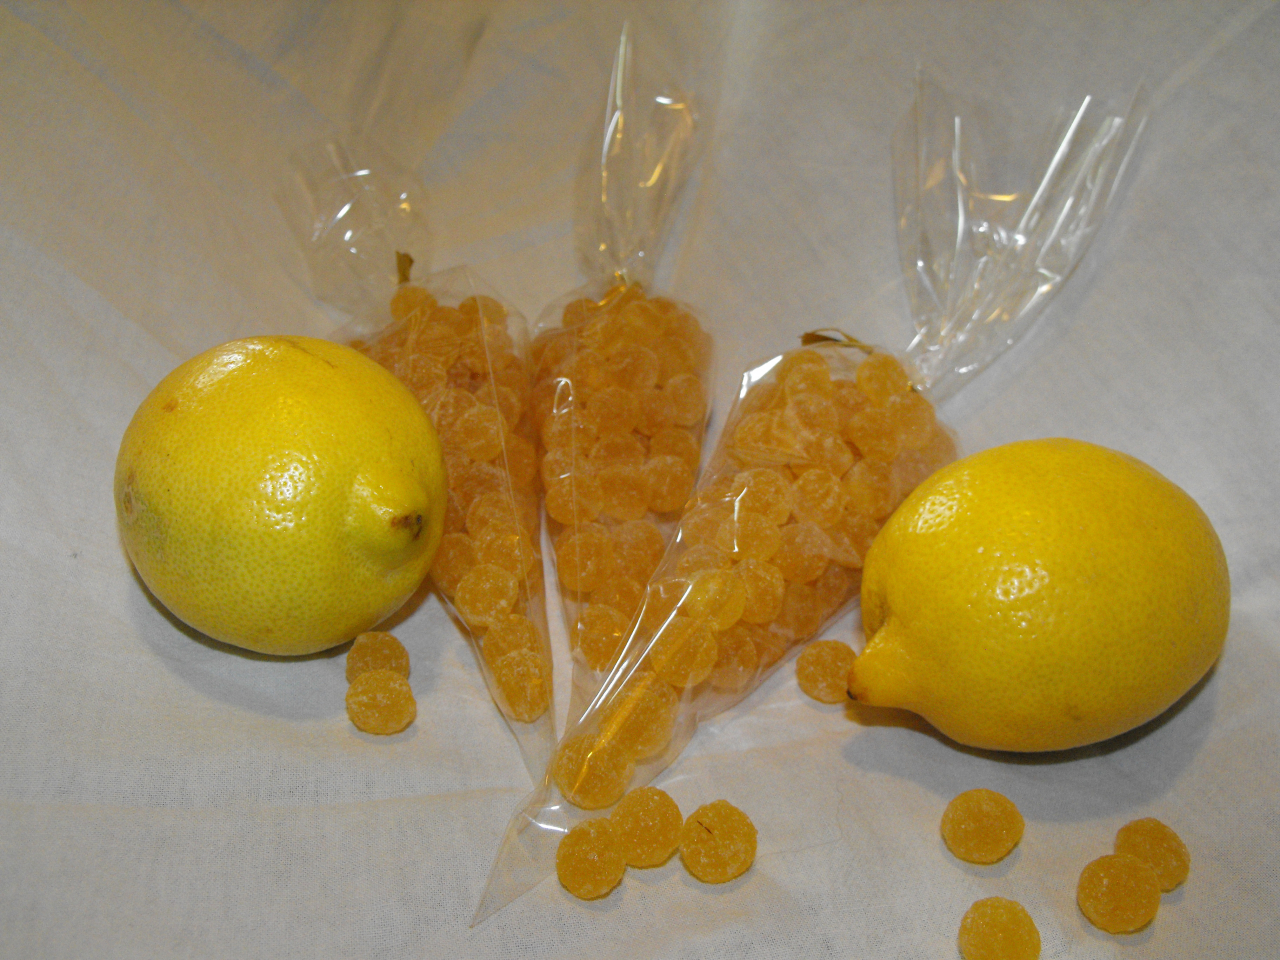 Perles au miel goût citron - 100 g - Miel De Perceneige 